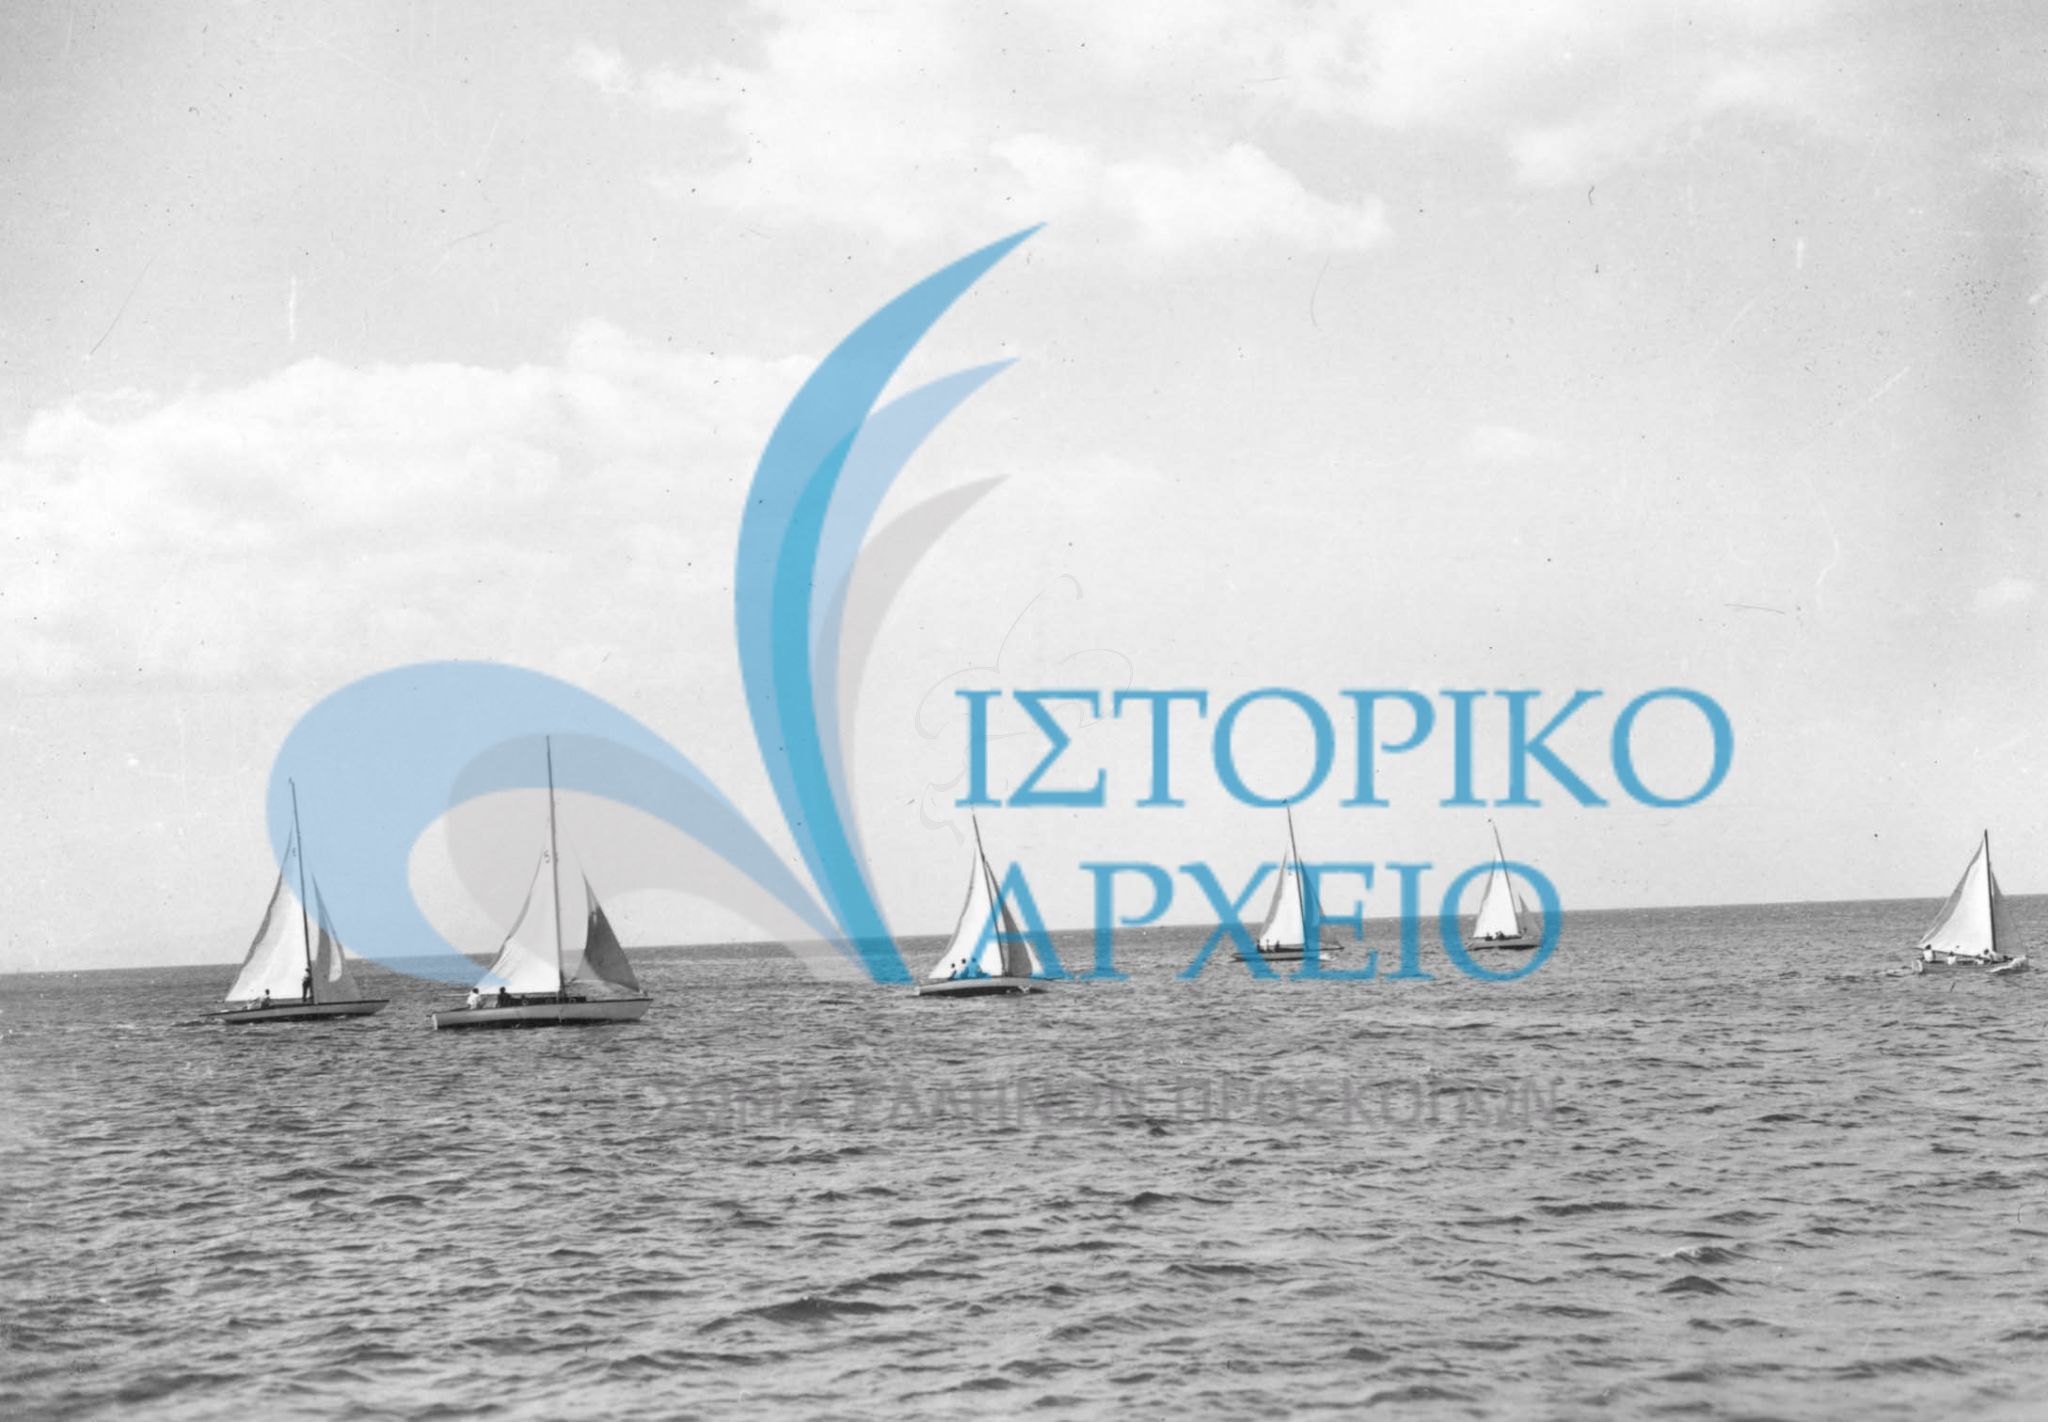 Τα σκάφη των ναυτοπροσκοπικών Αγώνων που οργάνωσε ο Τοπικός Προσκοπικός Σύνδεσμος Αθηνών το 1948 στο Π. Φάληρο.